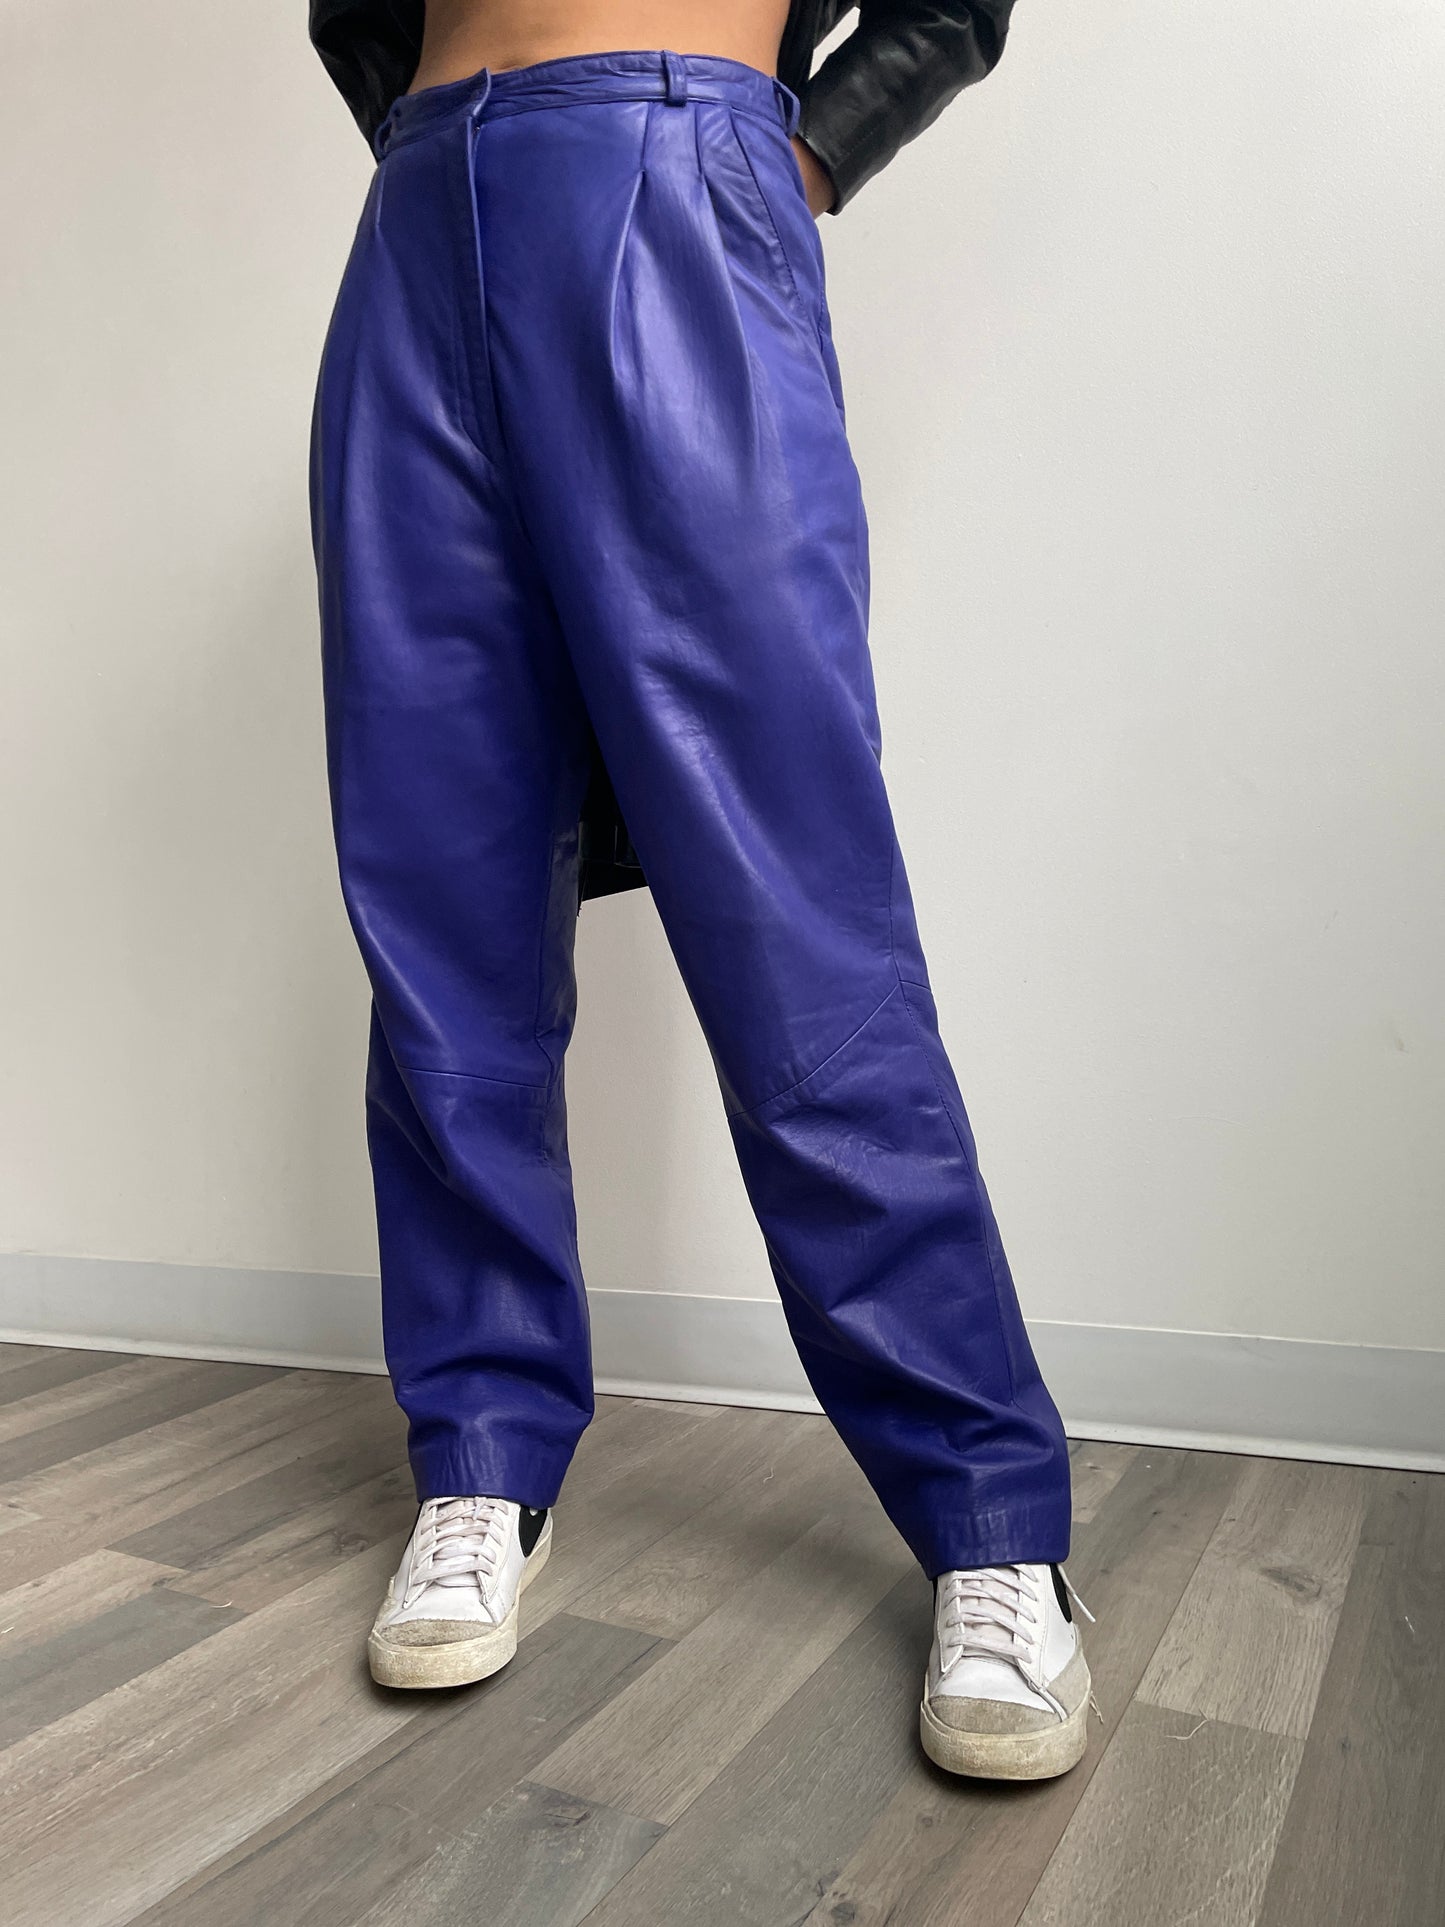 1980s Purple Leather Pants Medium